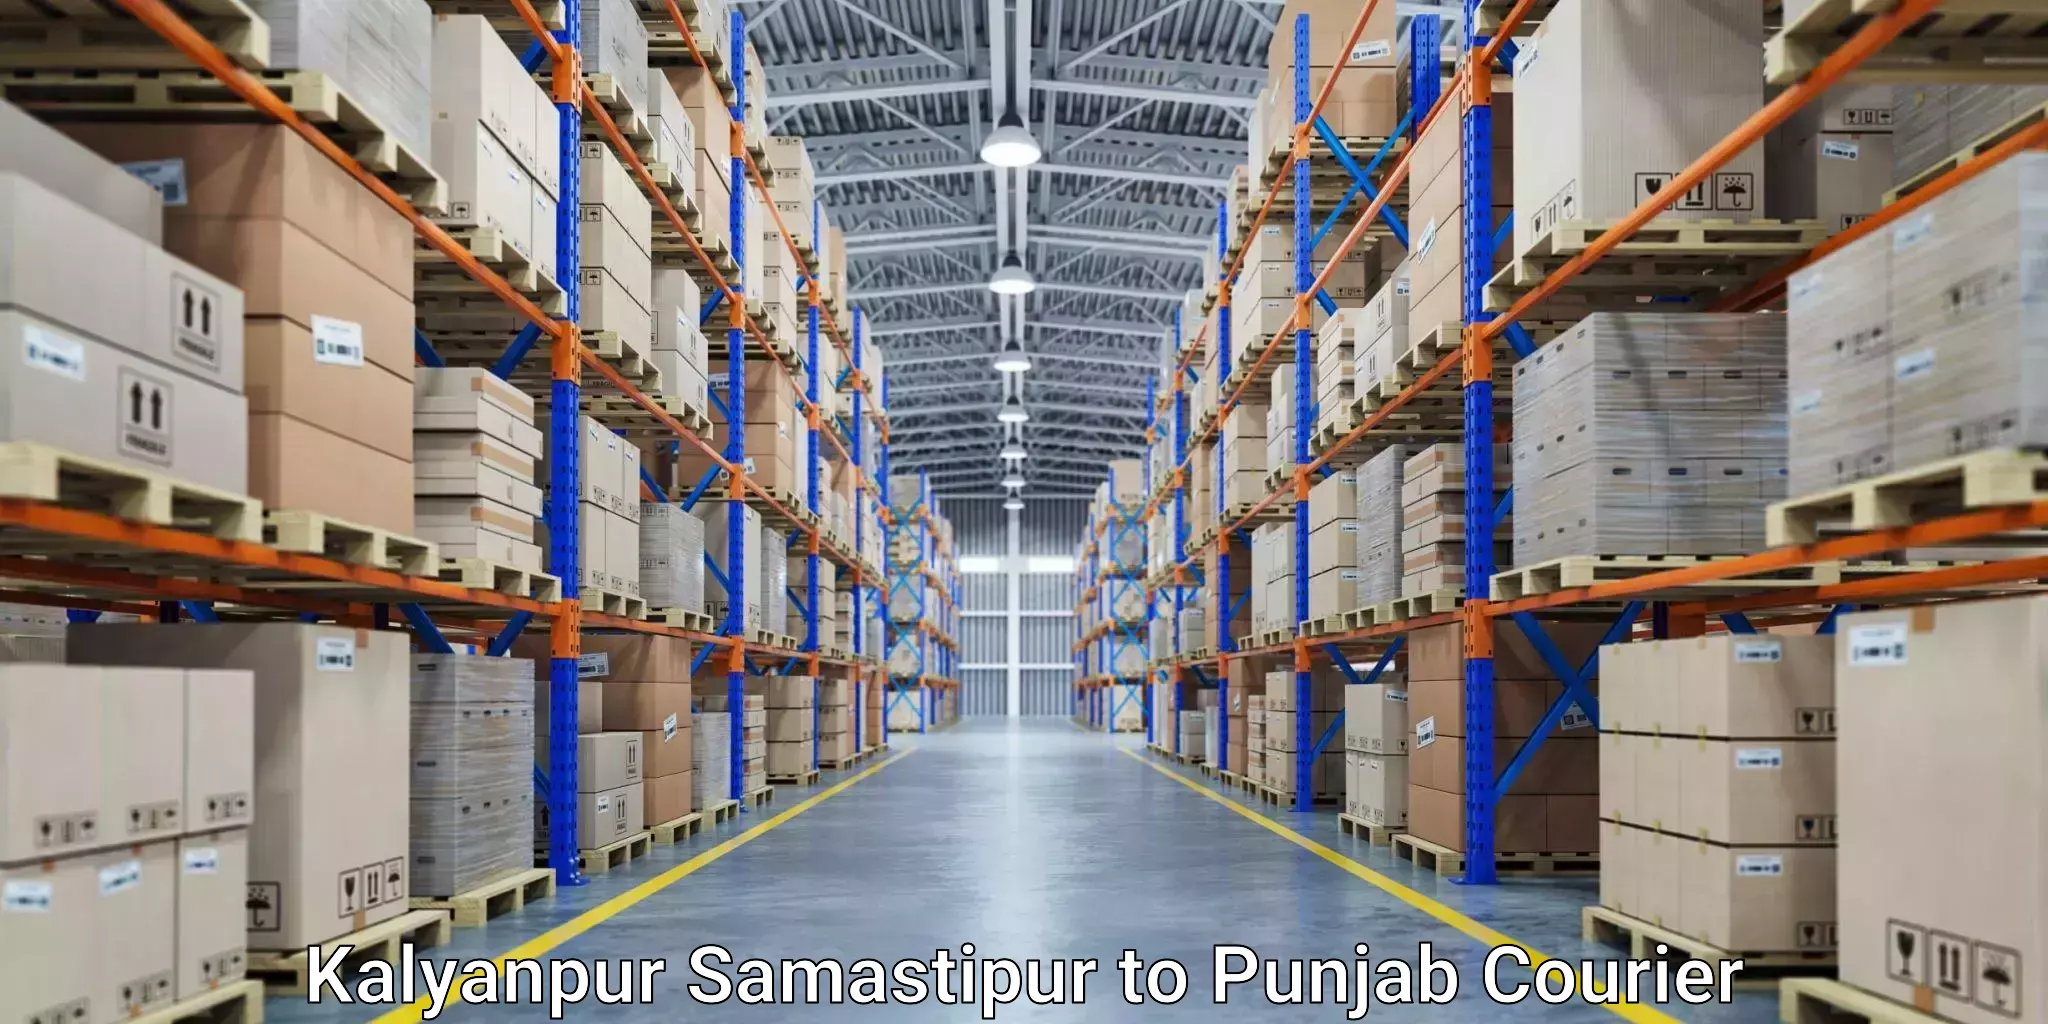 Global logistics network Kalyanpur Samastipur to Punjab